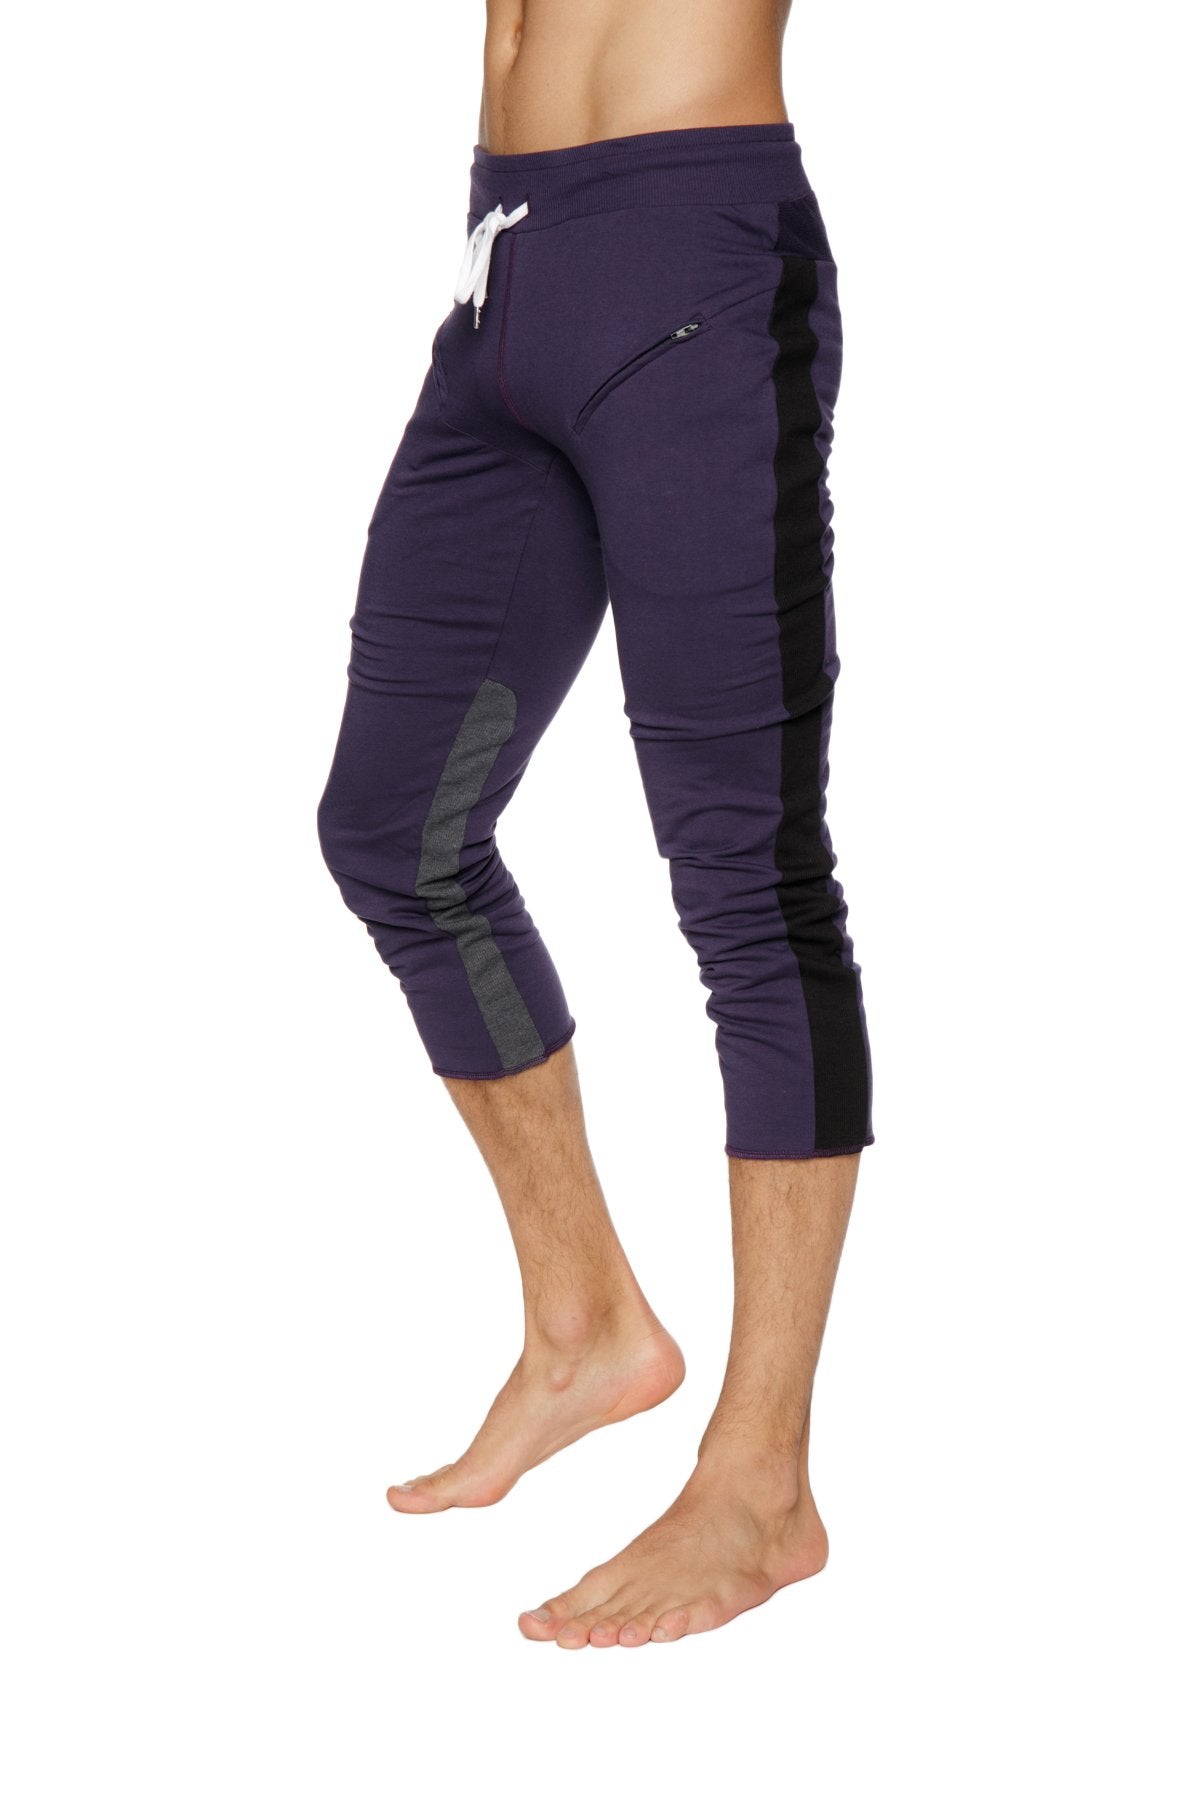 Mens 4/5 Zipper Pocket Capri Yoga Pants (Eggplant w/Black